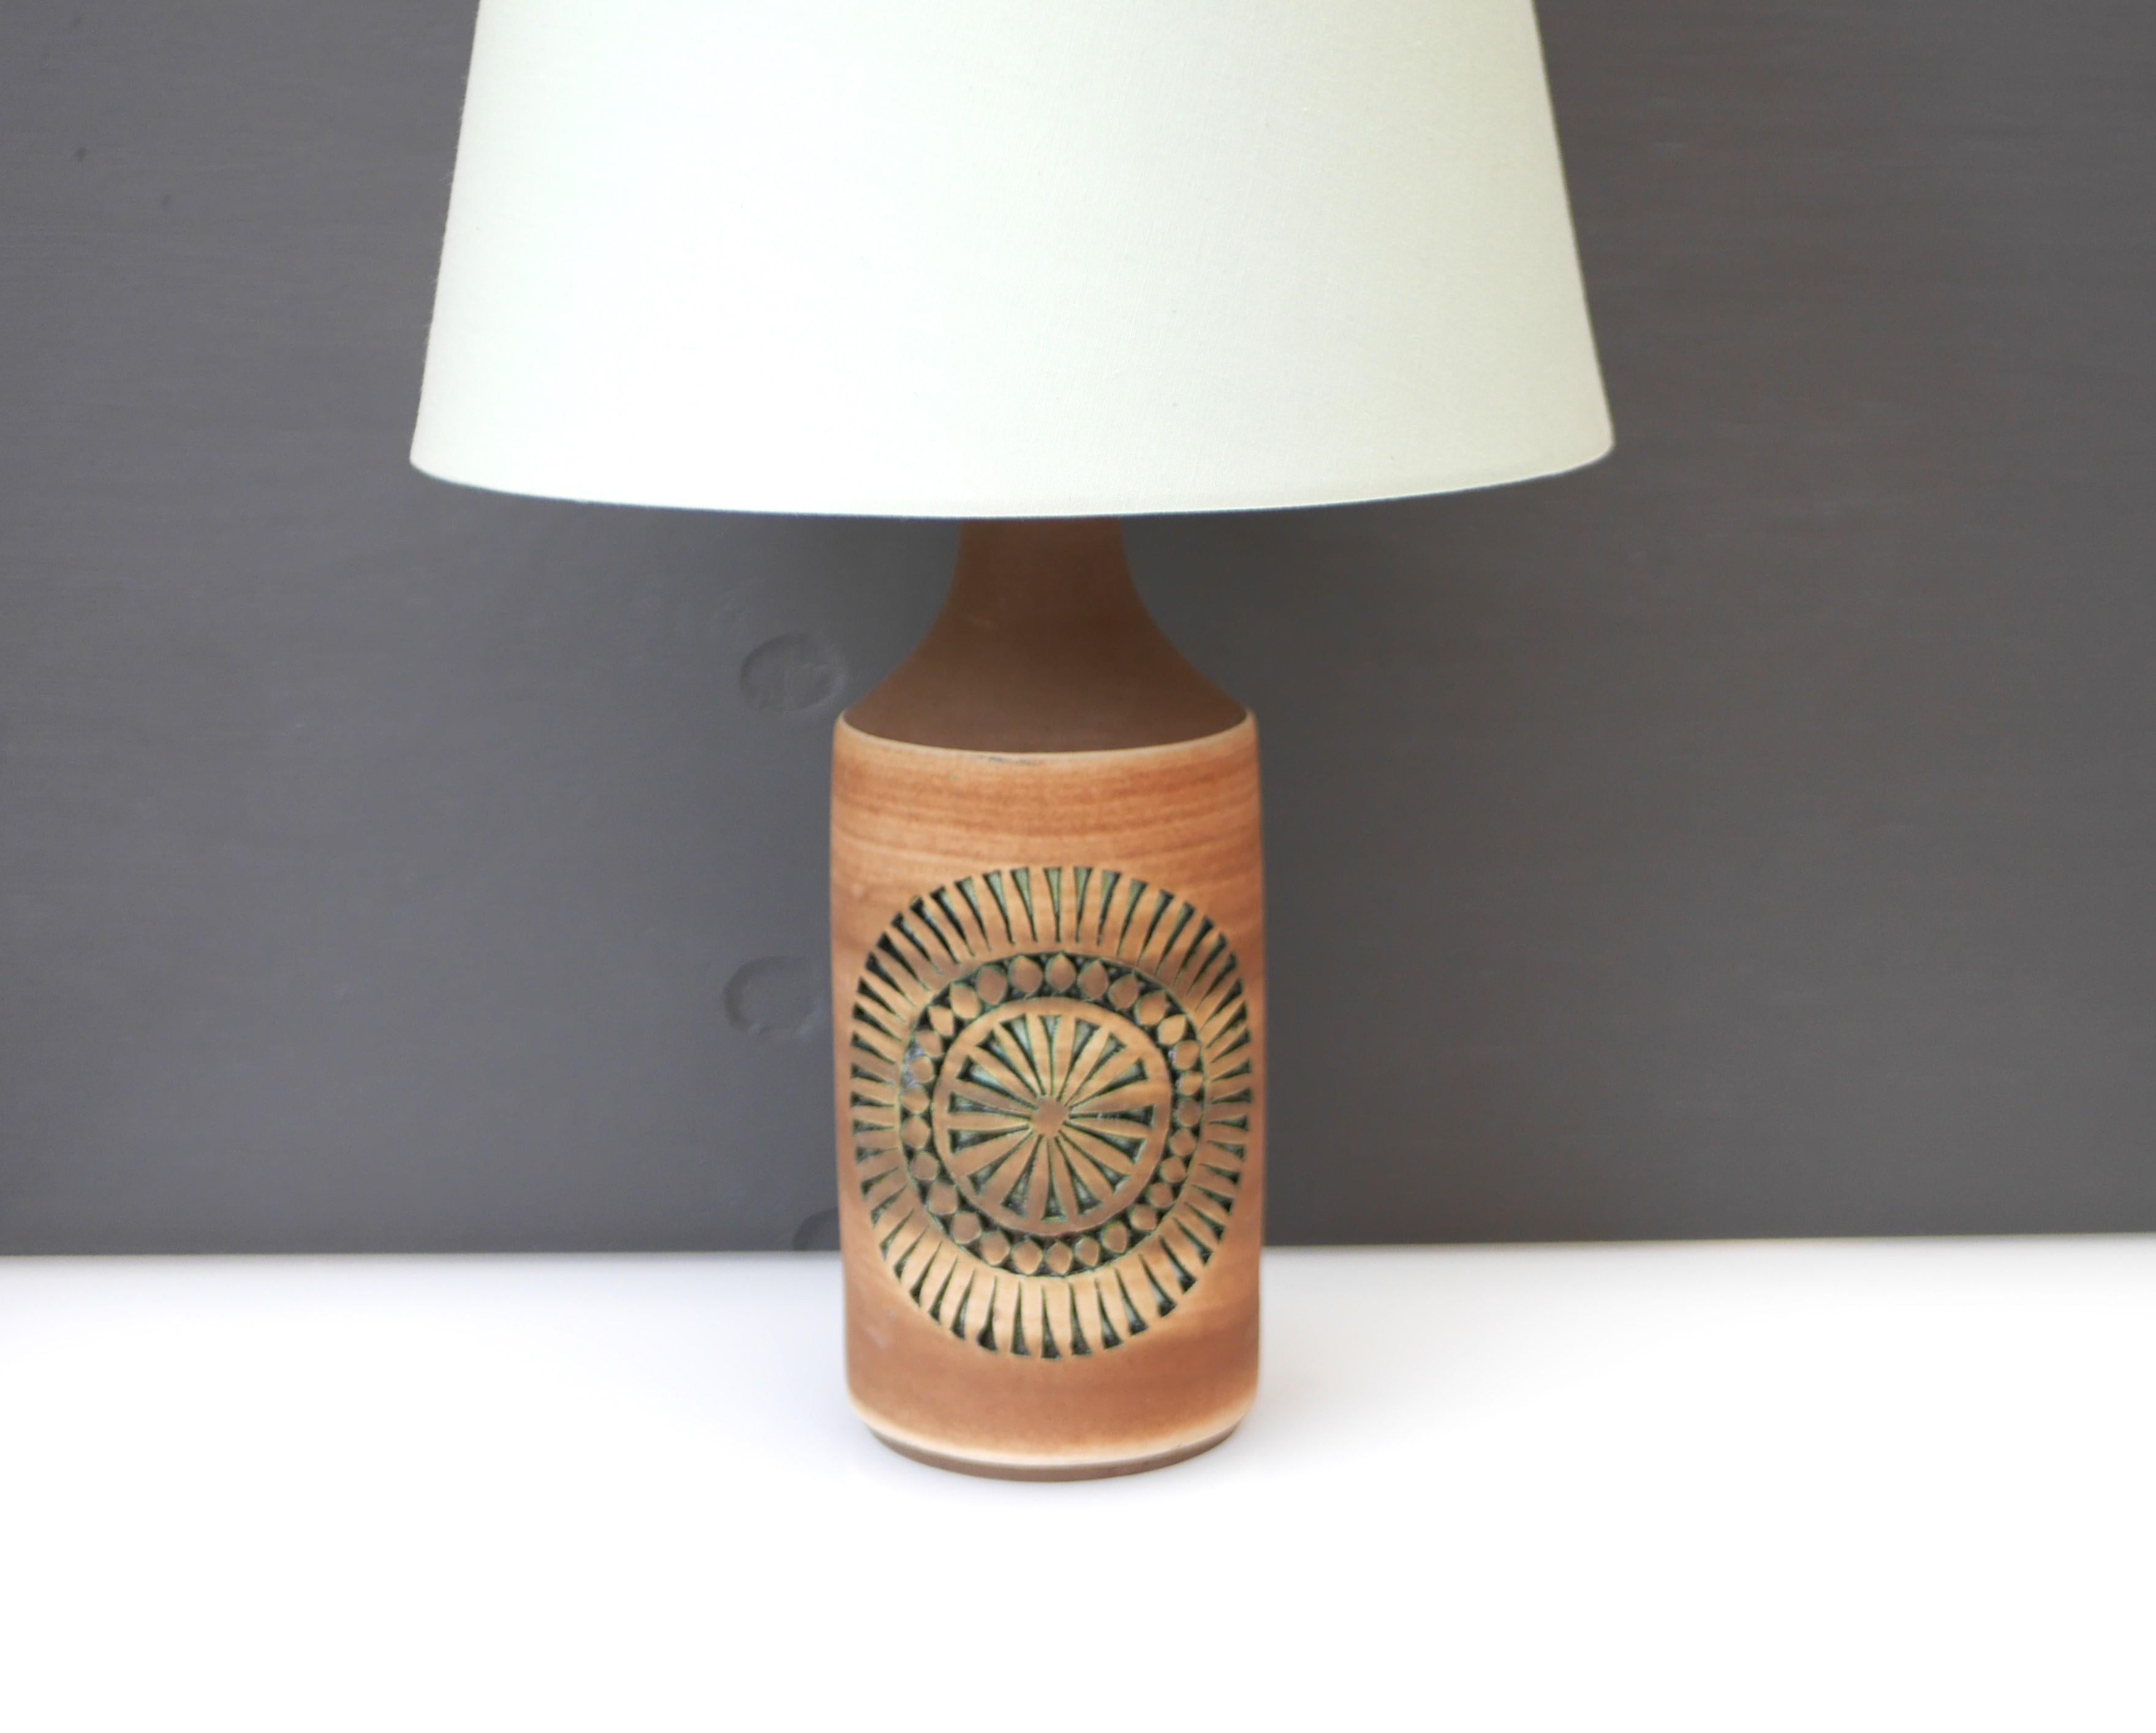 Fantástica base de lámpara de cerámica vintage bastante grande, hecha a mano por Thomas Anagrius para Alingsås Keramik, Suecia. Esta base de lámpara tiene un diseño sencillo, con intrincados dibujos incrustados y está hecha a mano. Los motivos son